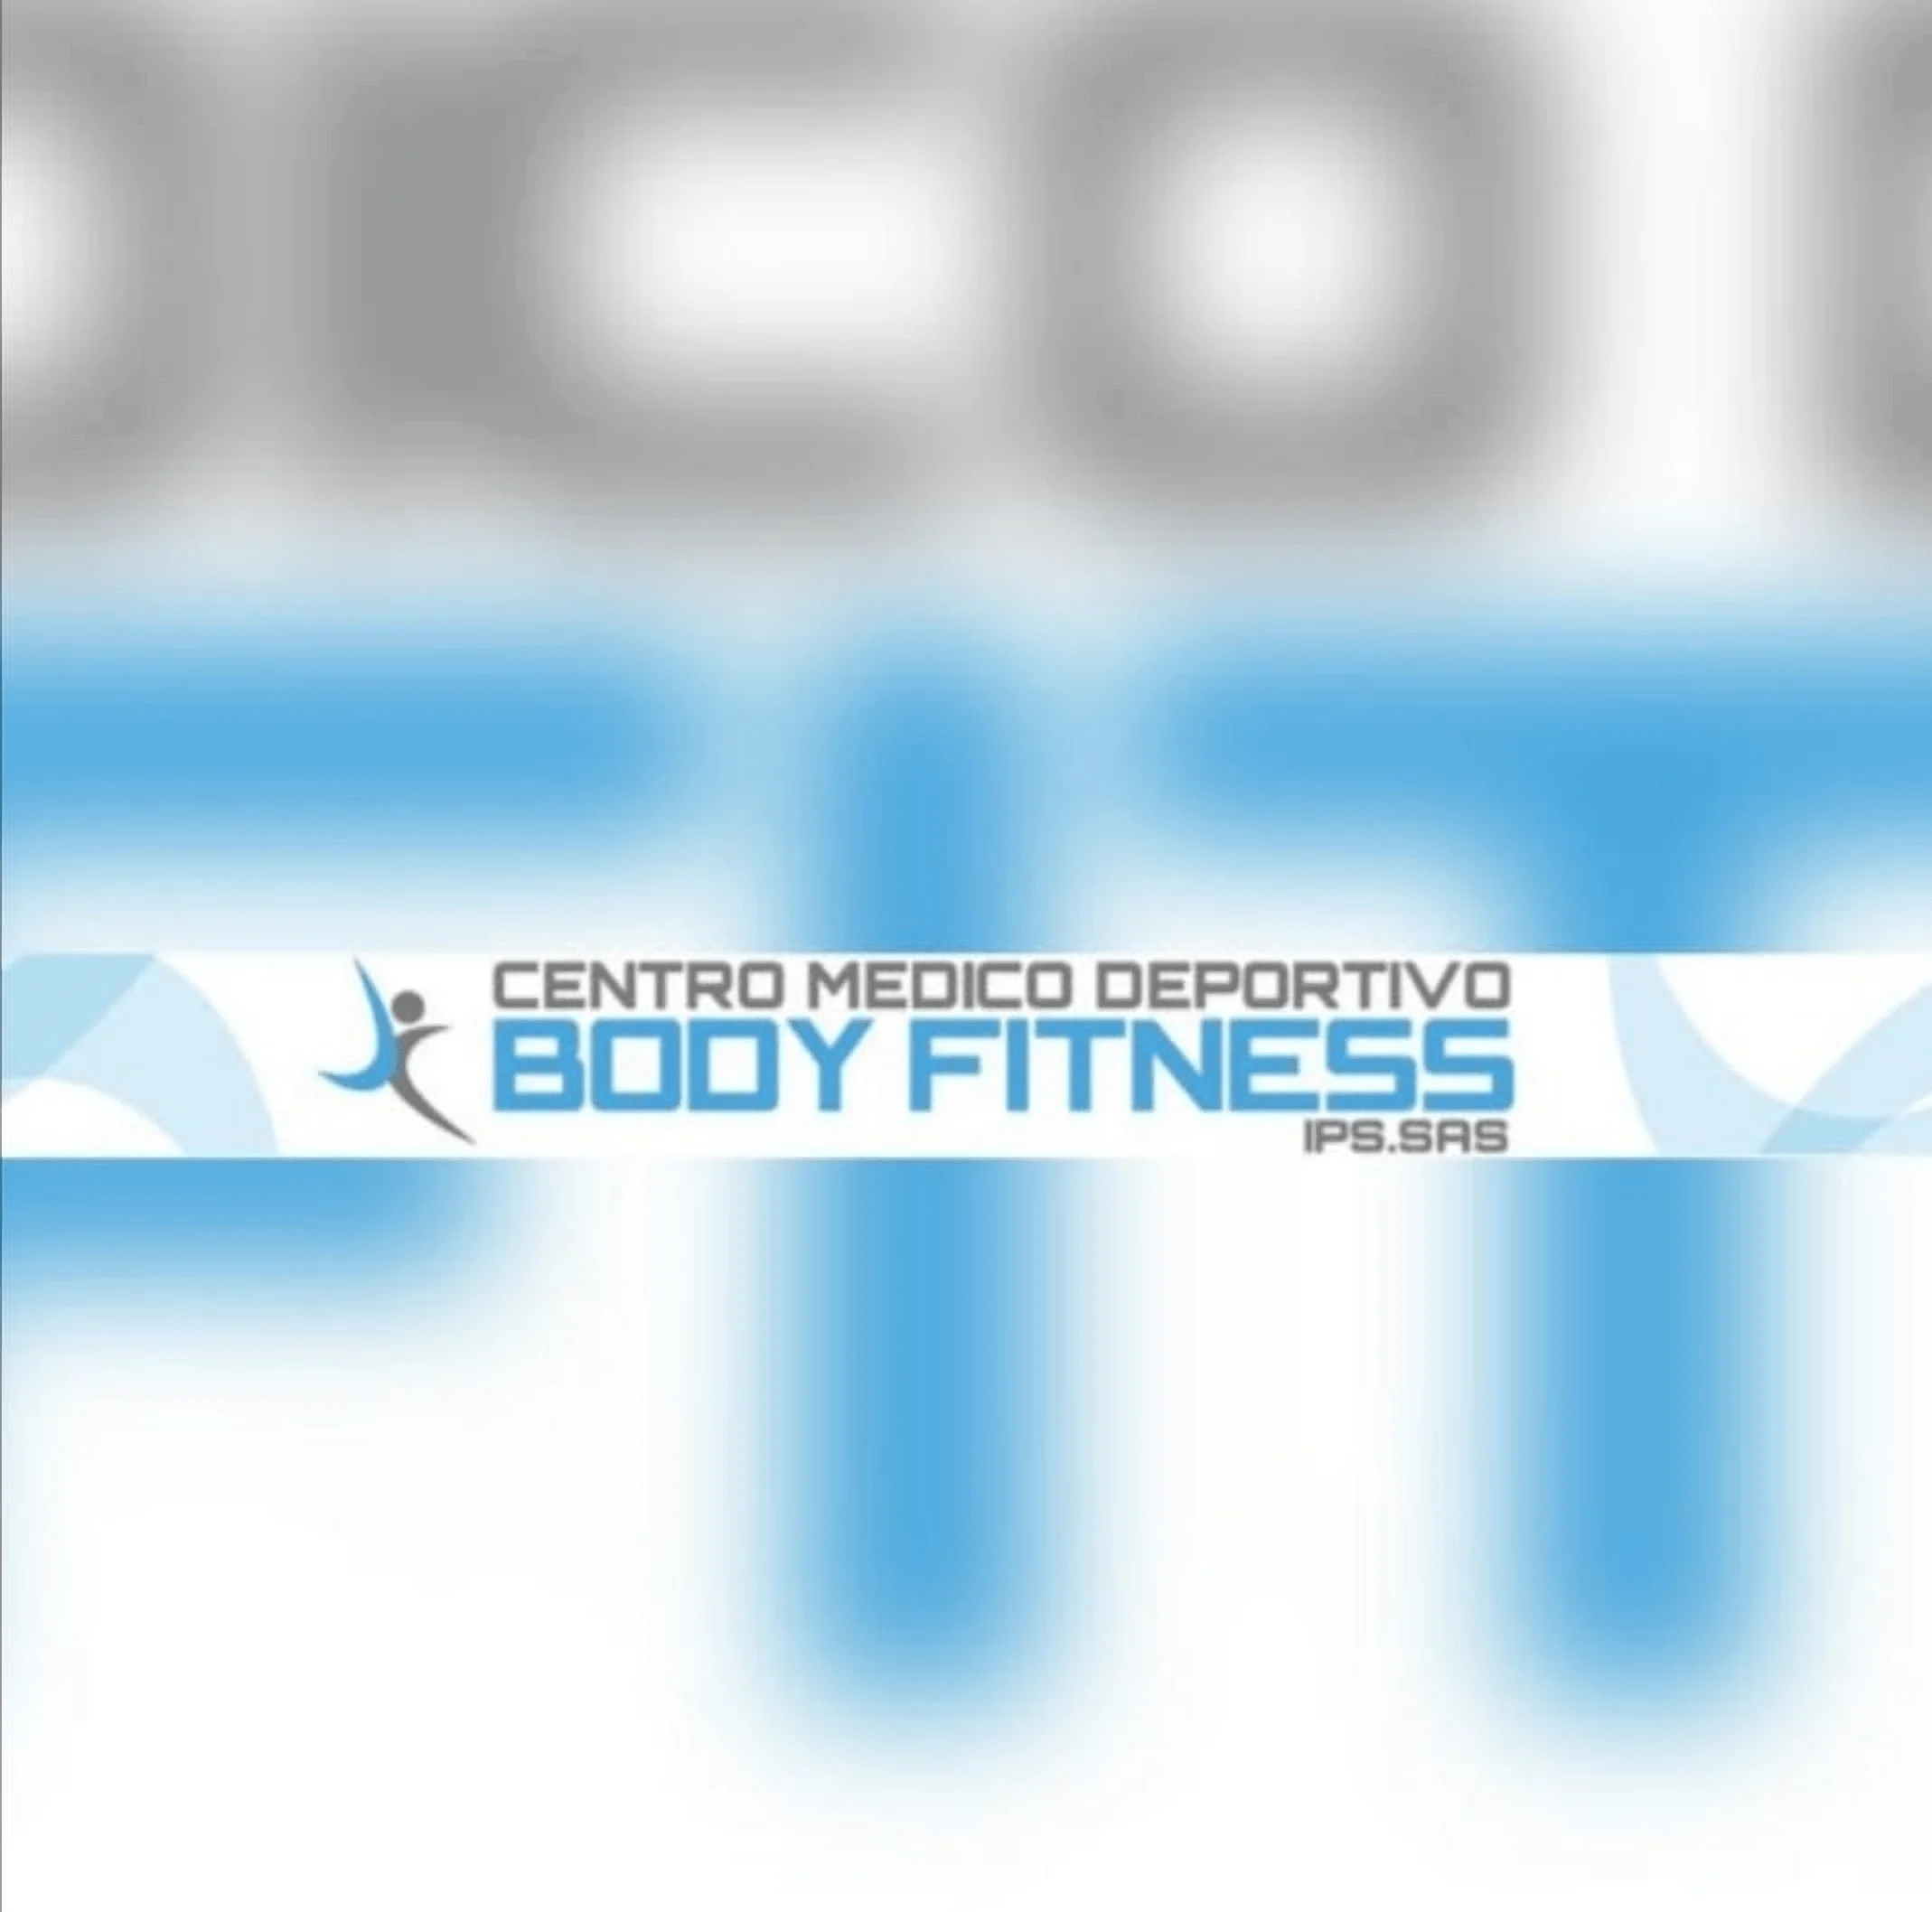 Centro Médico Deportivo Body Fitness-1487